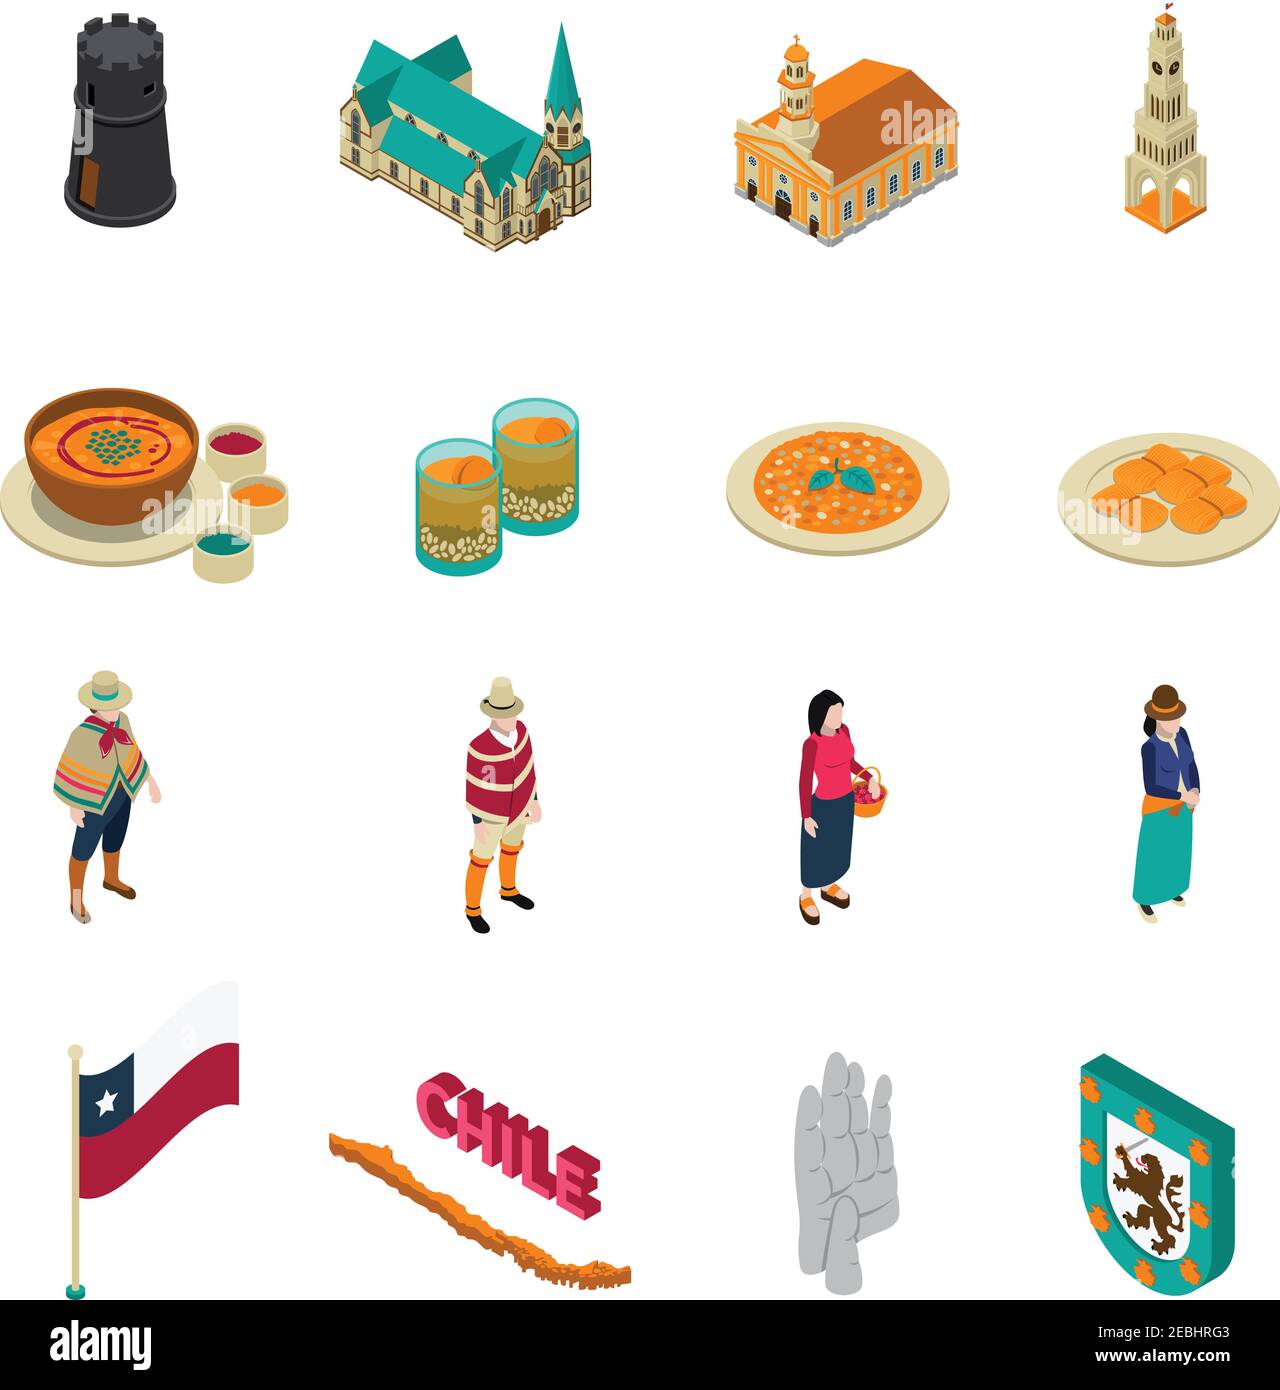 Collection d'icônes isométriques haut de gamme d'attractions touristiques du Chili avec niveaux nationaux tarte plat et églises illustration vectorielle isolée Illustration de Vecteur